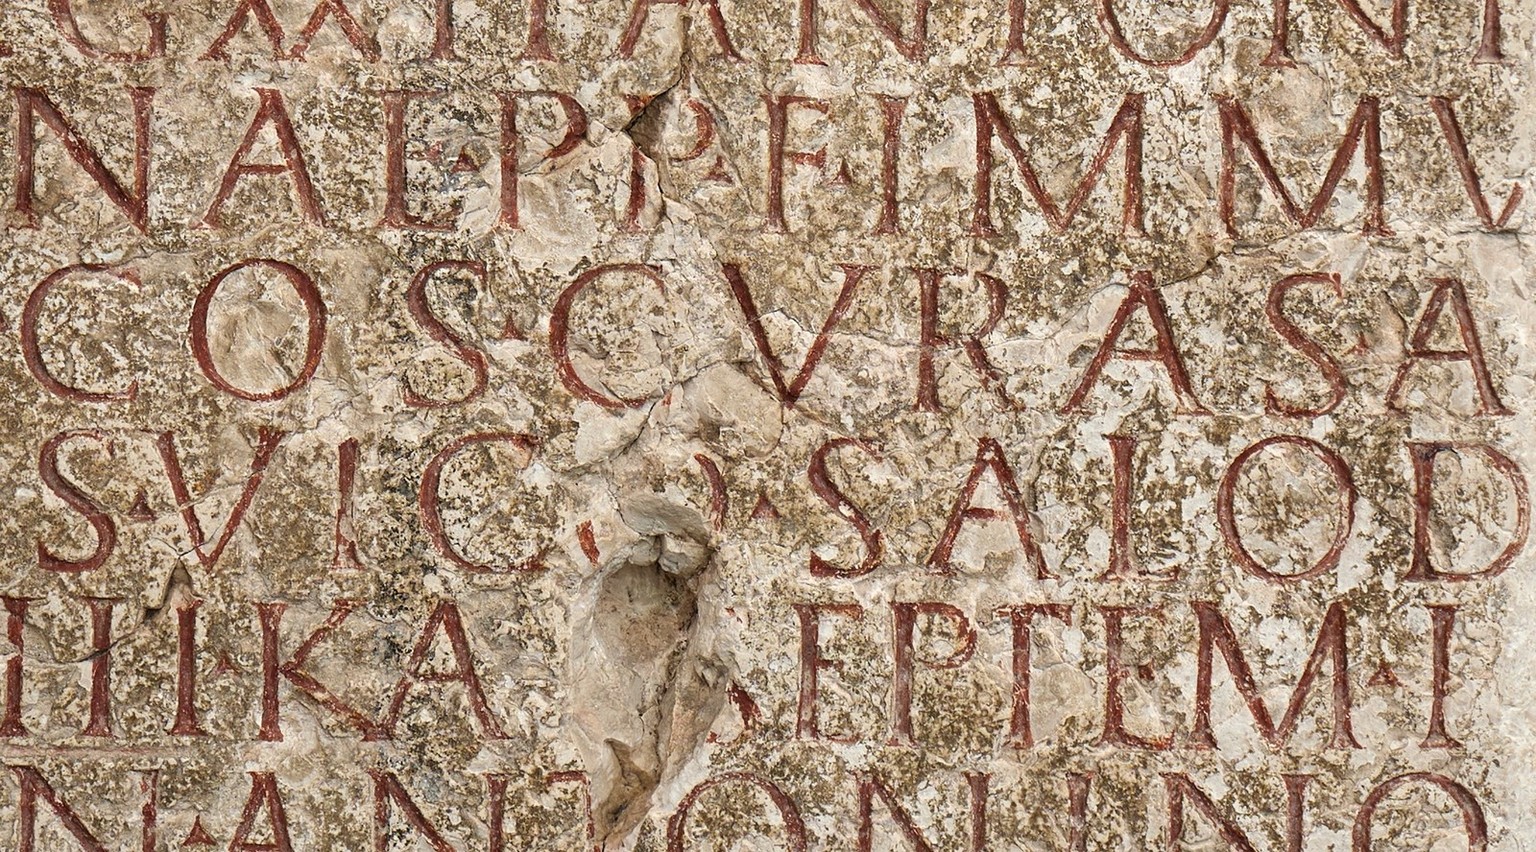 Détail d’une inscription latine sur un ancien autel en l’honneur de la déesse cavalière celtique Epona. On y trouve également la première mention écrite du vicus romain de Salodurum (Soleure).
https:/ ...